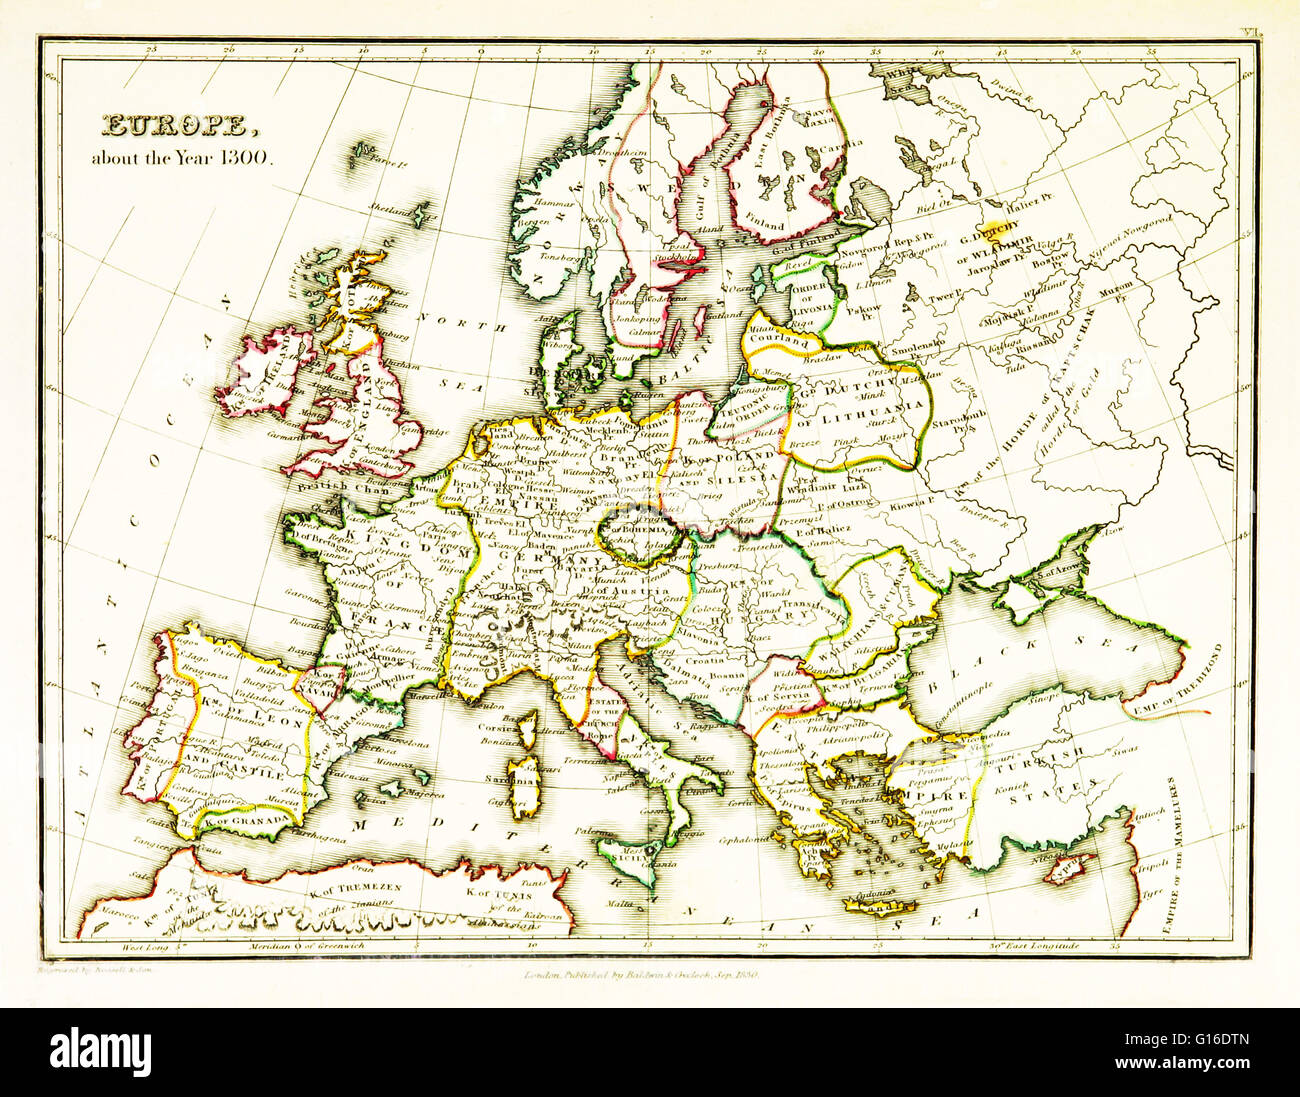 Eine Karte von Europa, territoriale Grenzen, die im 14. Jahrhundert, speziell 1300 bestehenden zeigen. Karte veröffentlicht 1831. Stockfoto